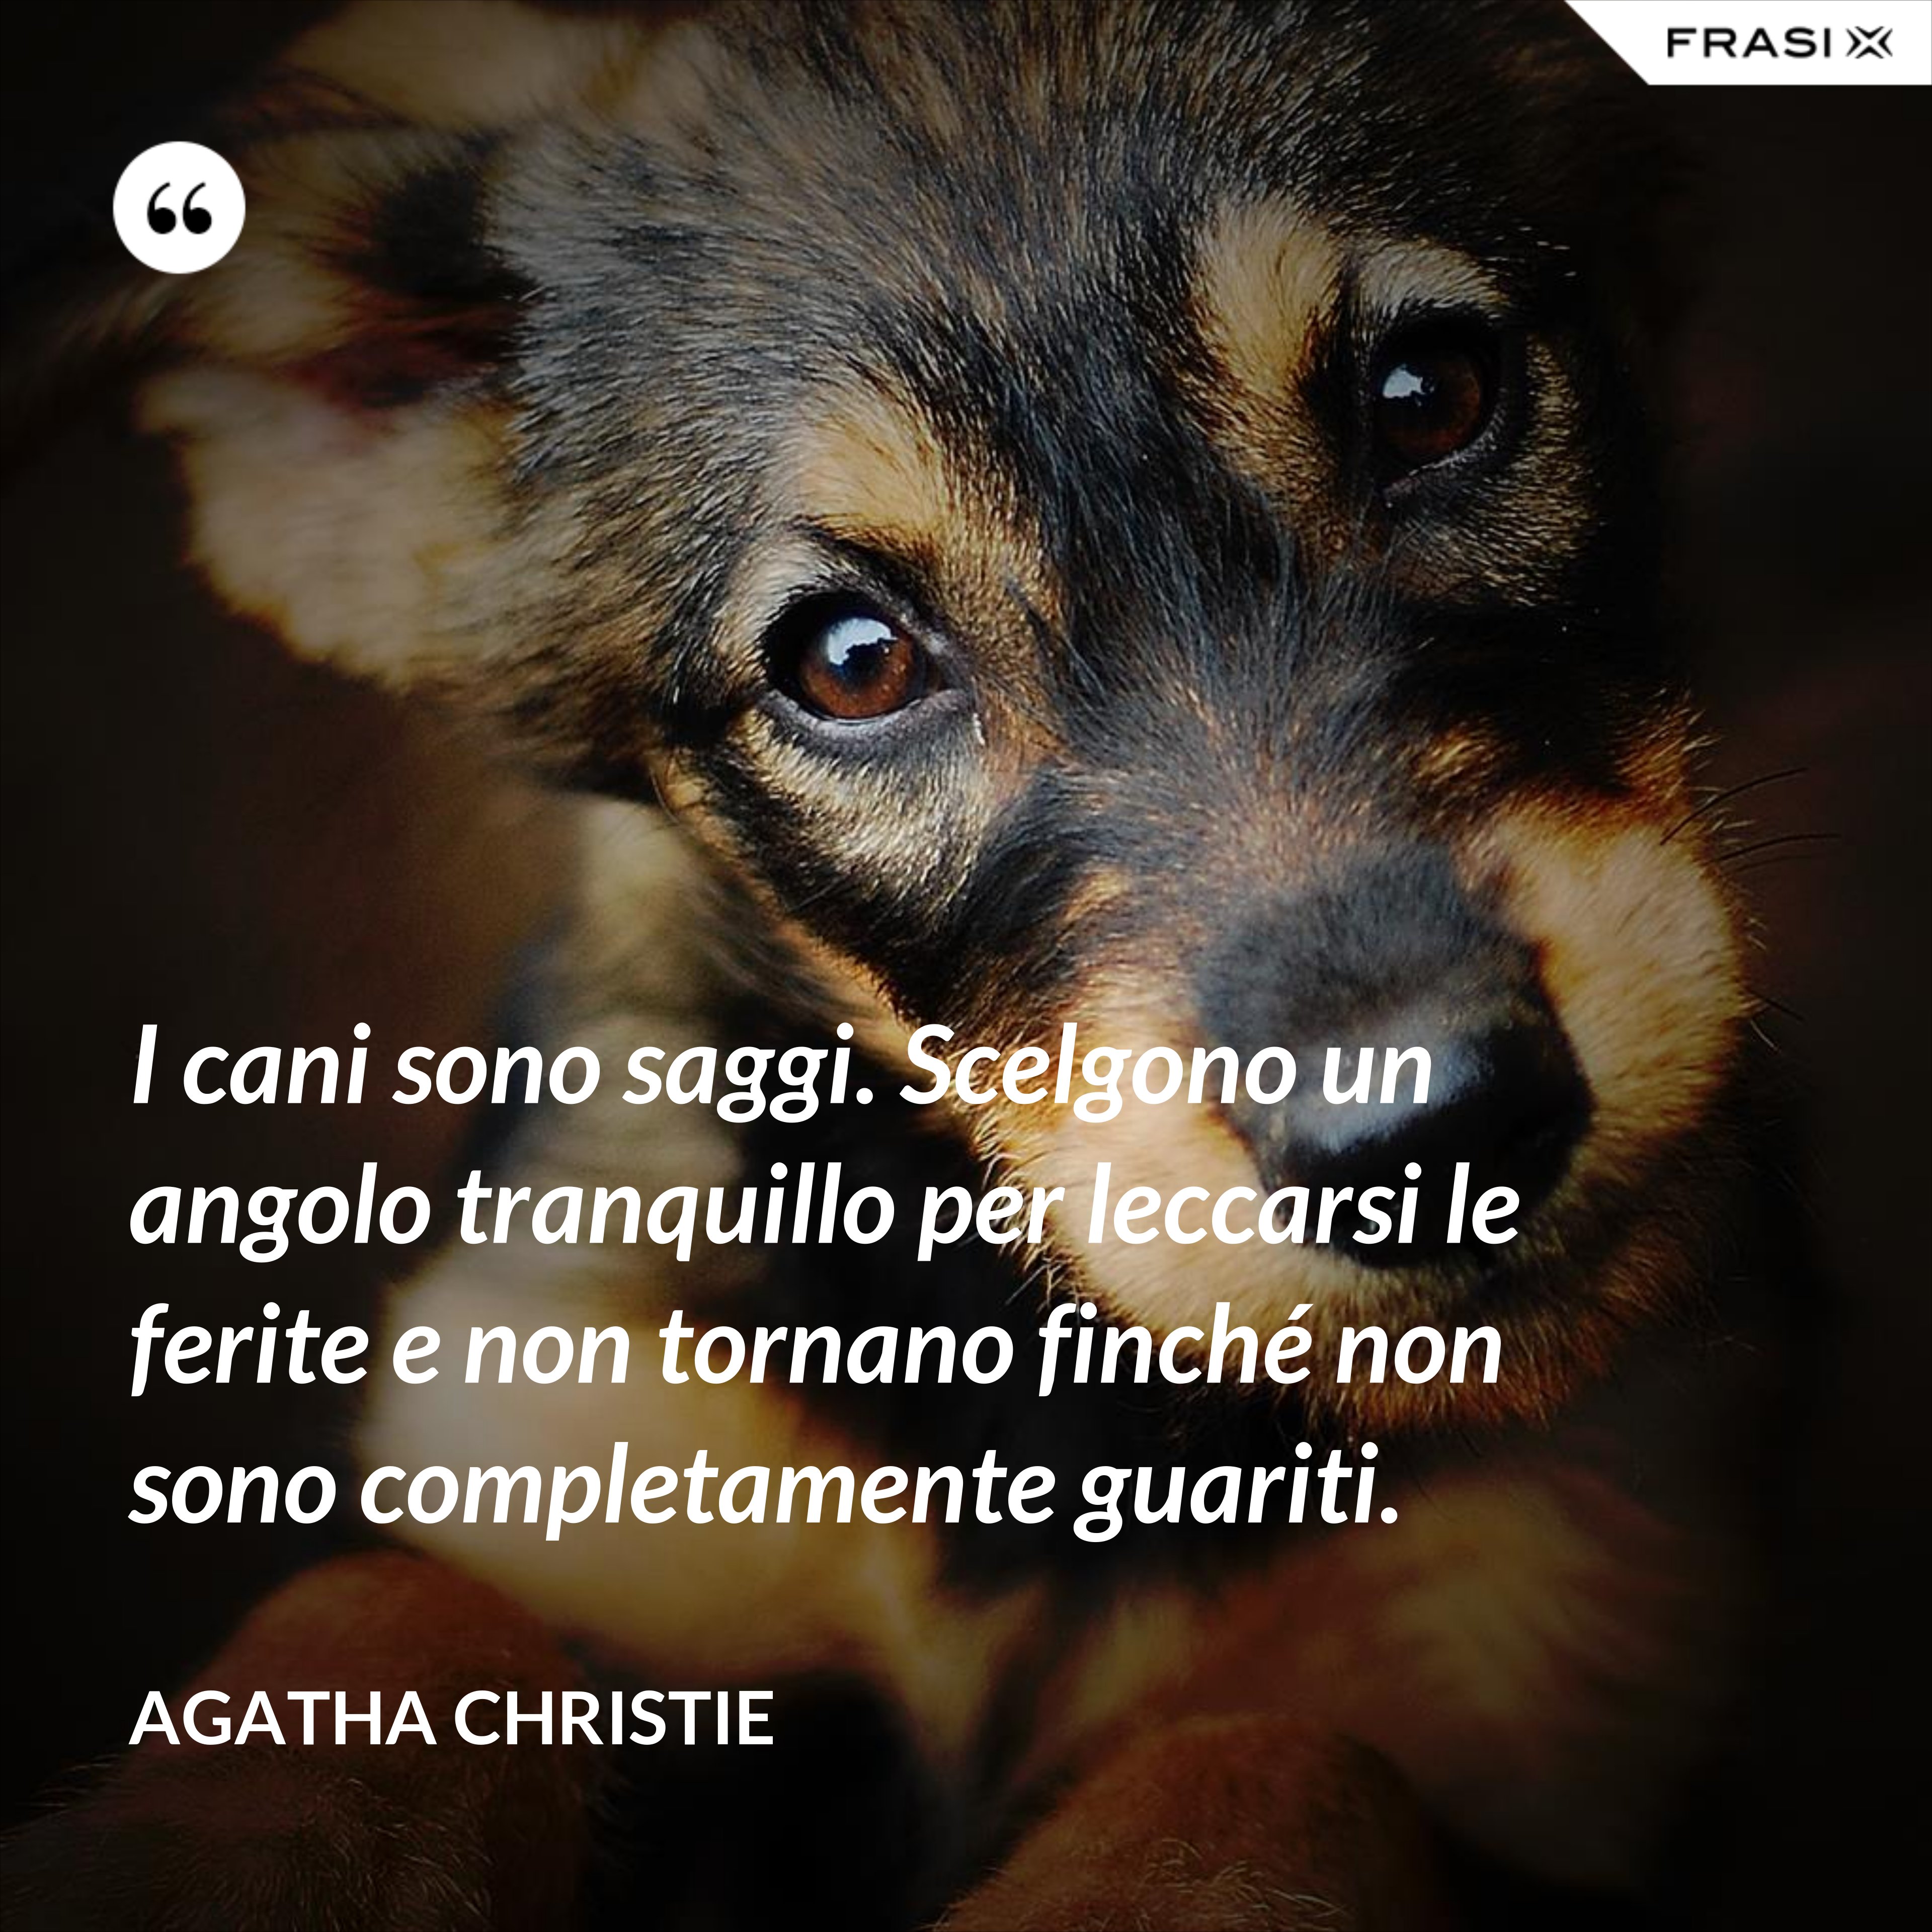 I cani sono saggi. Scelgono un angolo tranquillo per leccarsi le ferite e non tornano finché non sono completamente guariti. - Agatha Christie